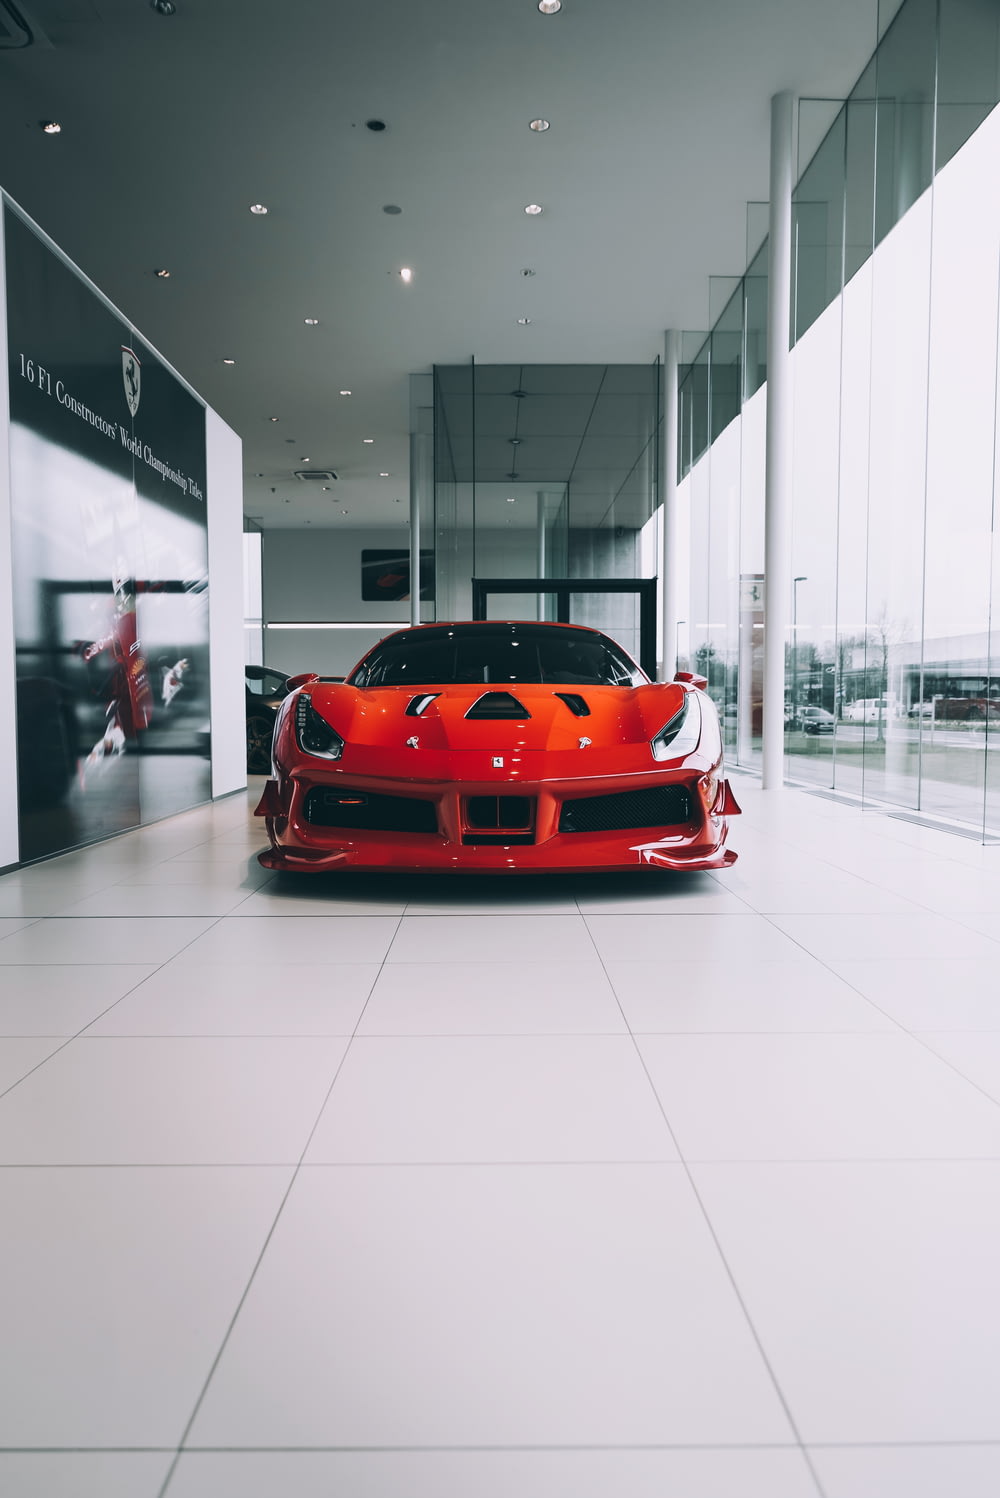 Voiture Ferrari rouge dans une pièce blanche